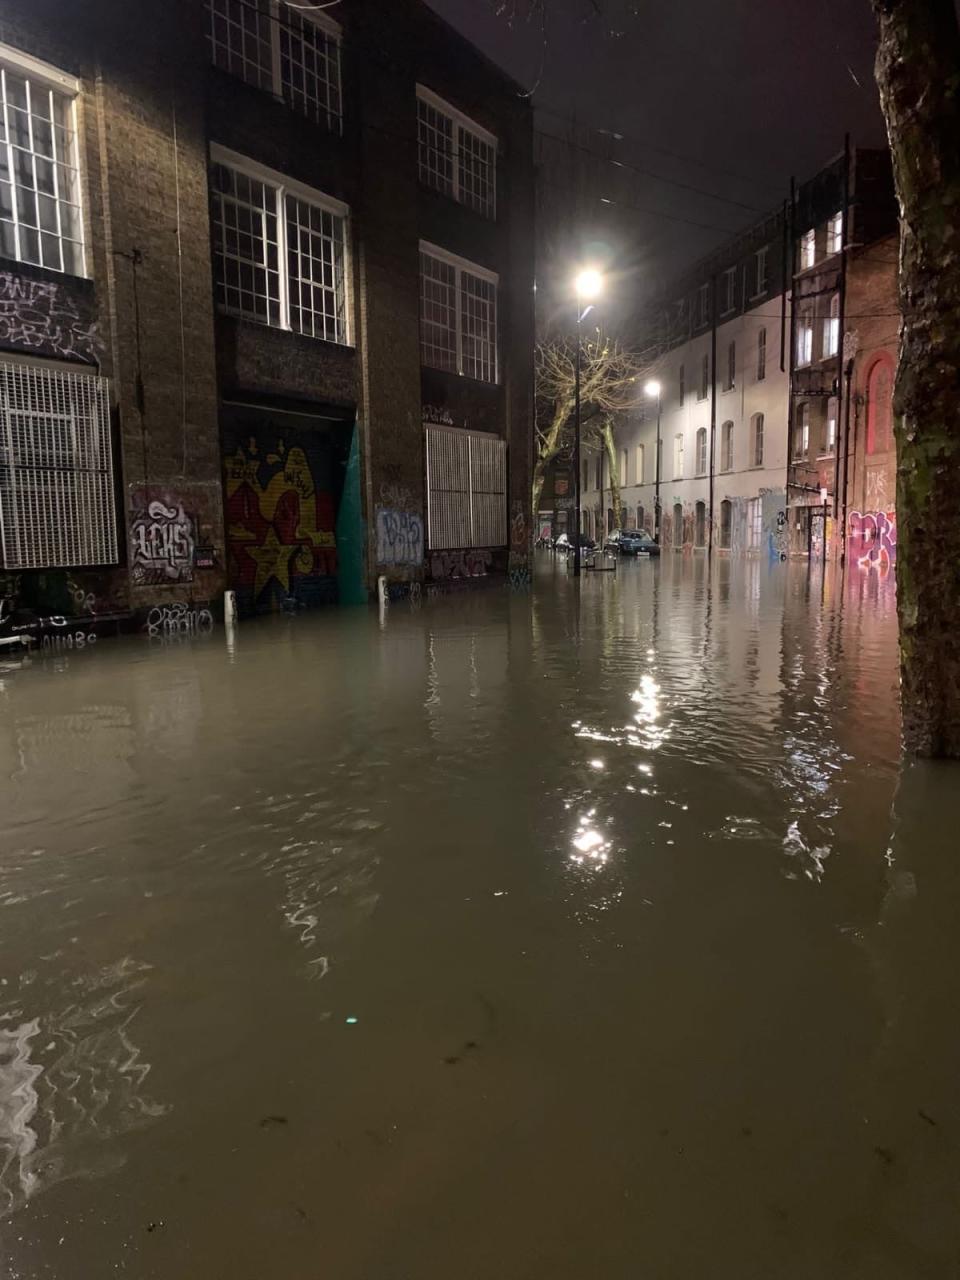 Flooding in Hackney Wick on Thursday night (Simon Goode)